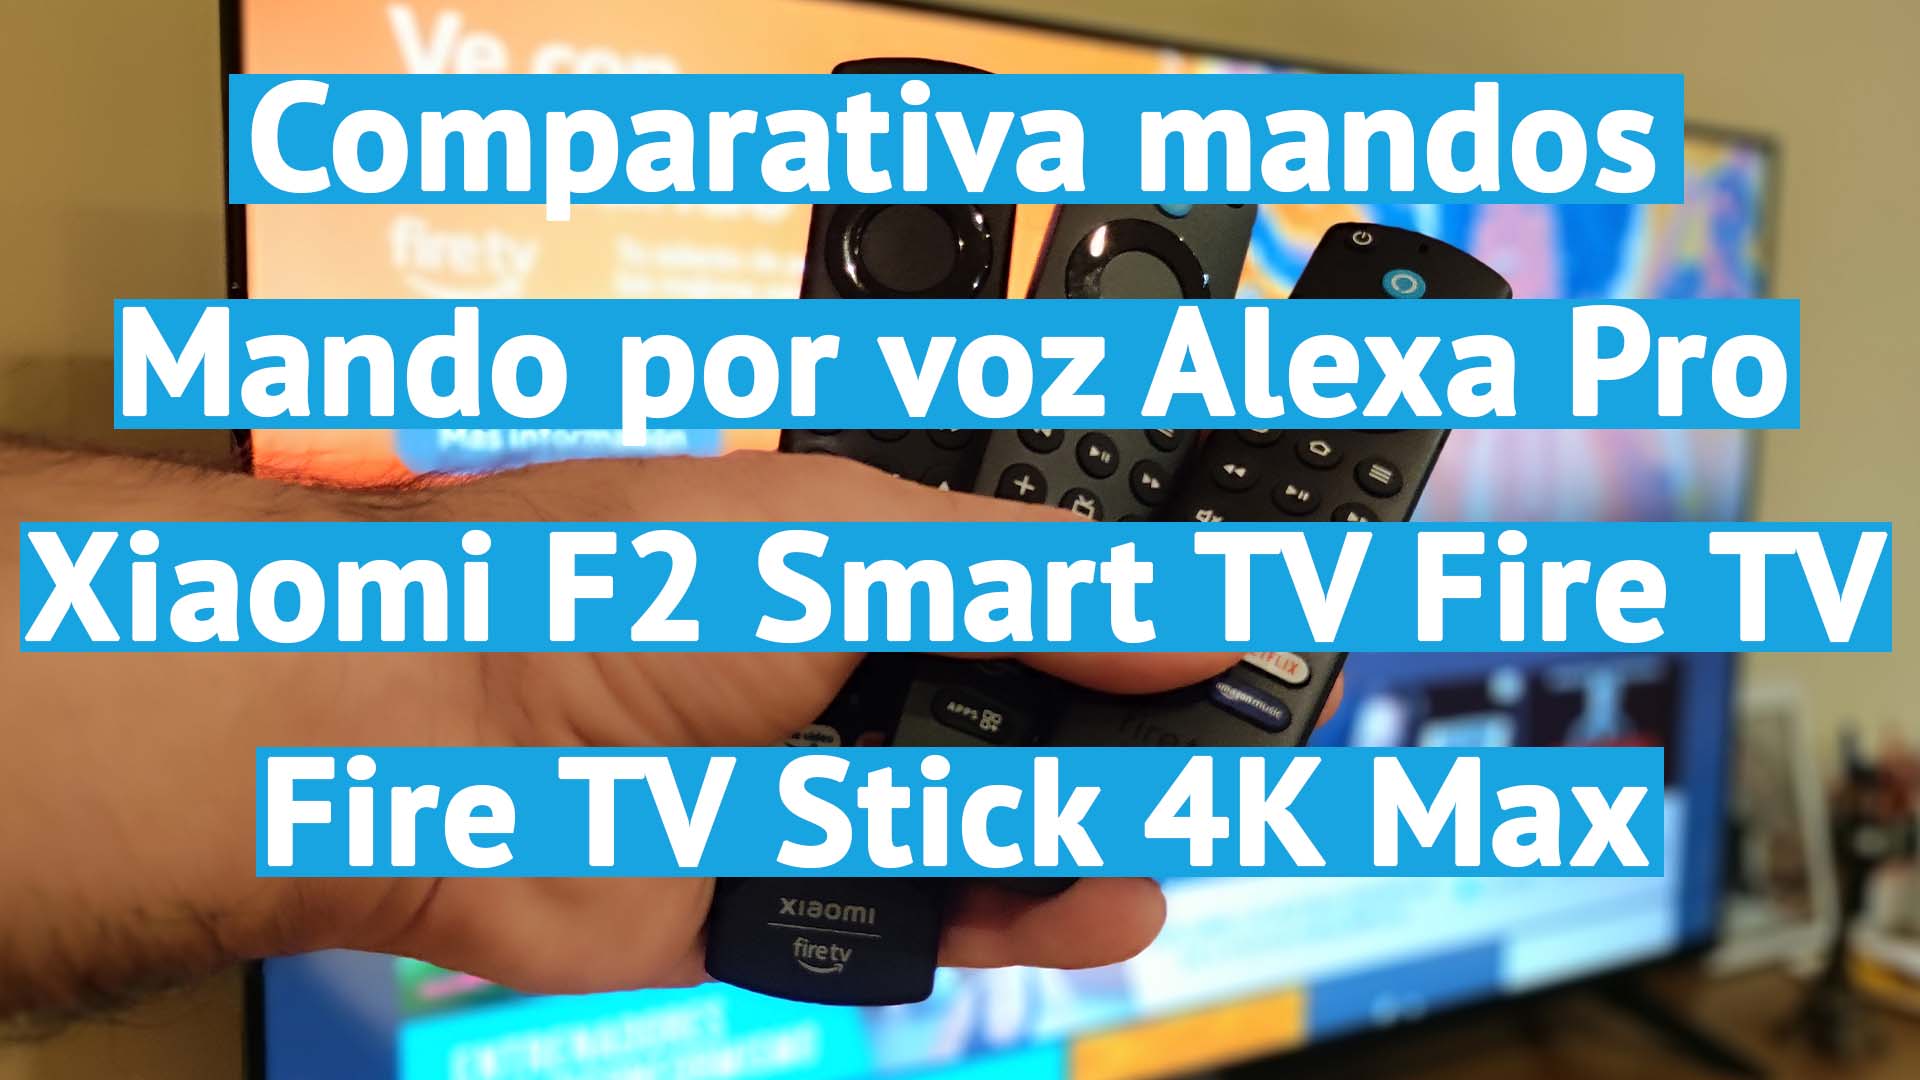 Comparativa de Mando por voz Alexa Pro para Fire TV compatible con Fire TV y Smart TV con Fire TV